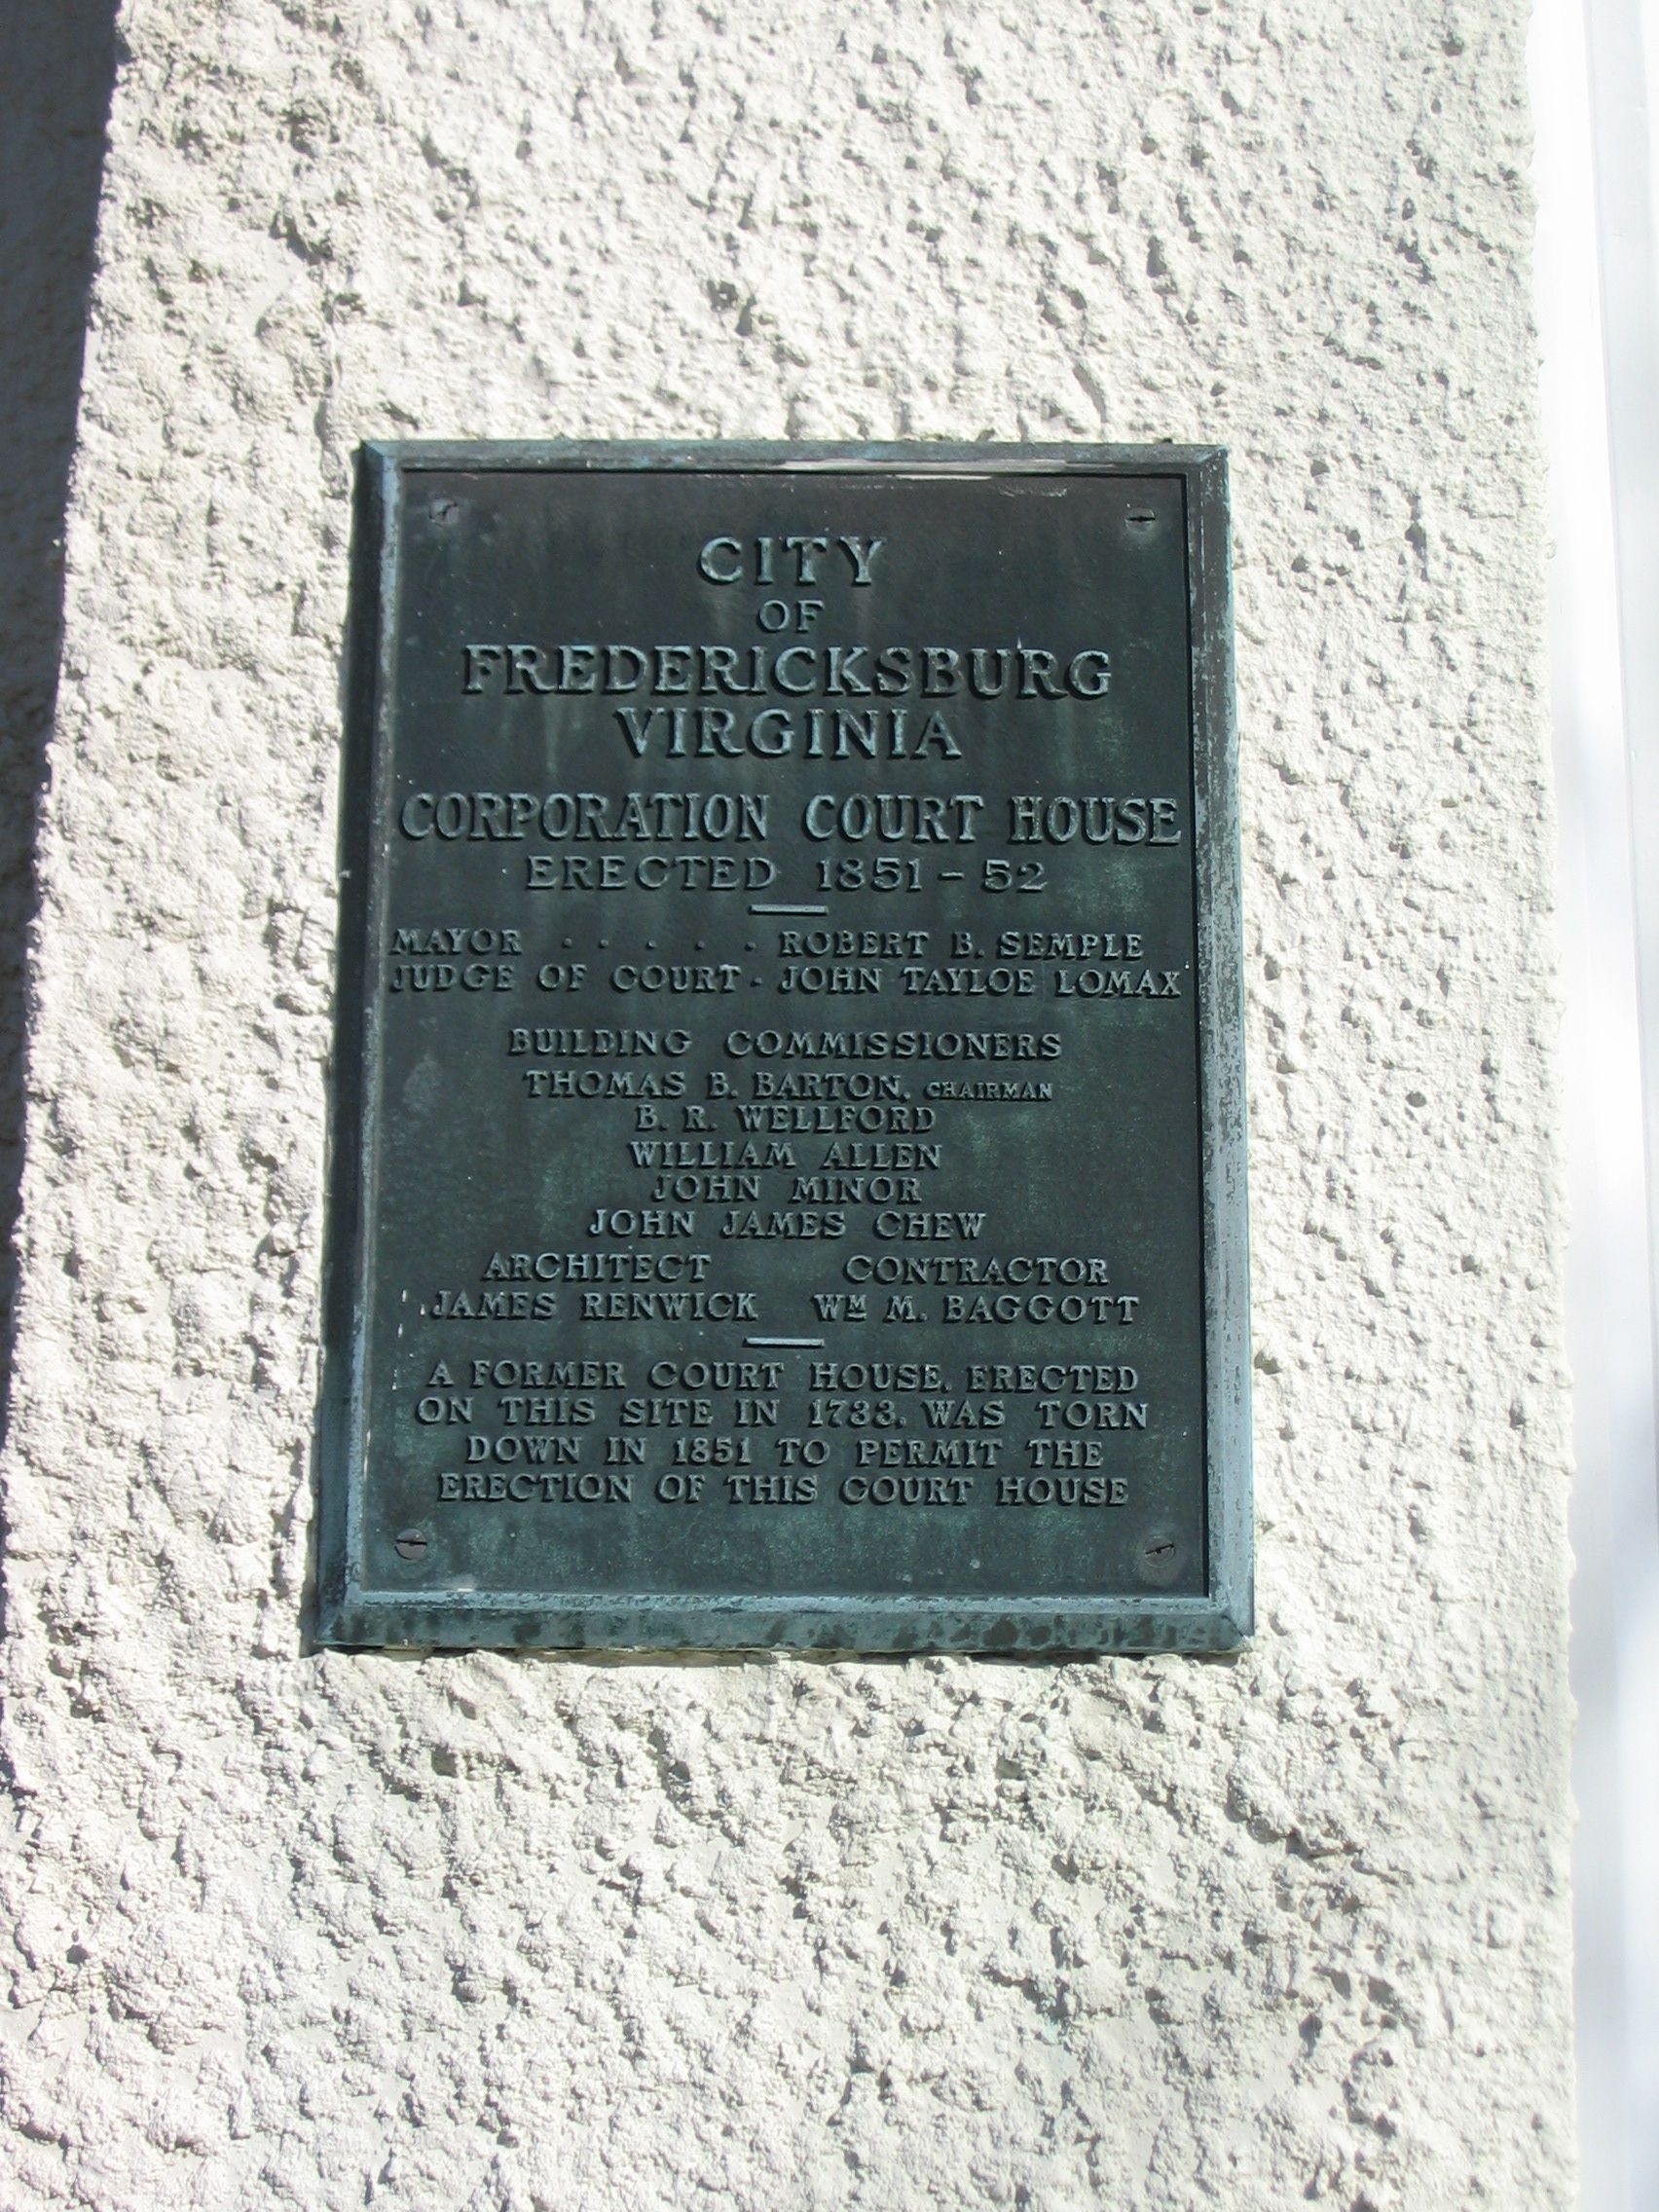 Corporation Court House, Left Side Plaque